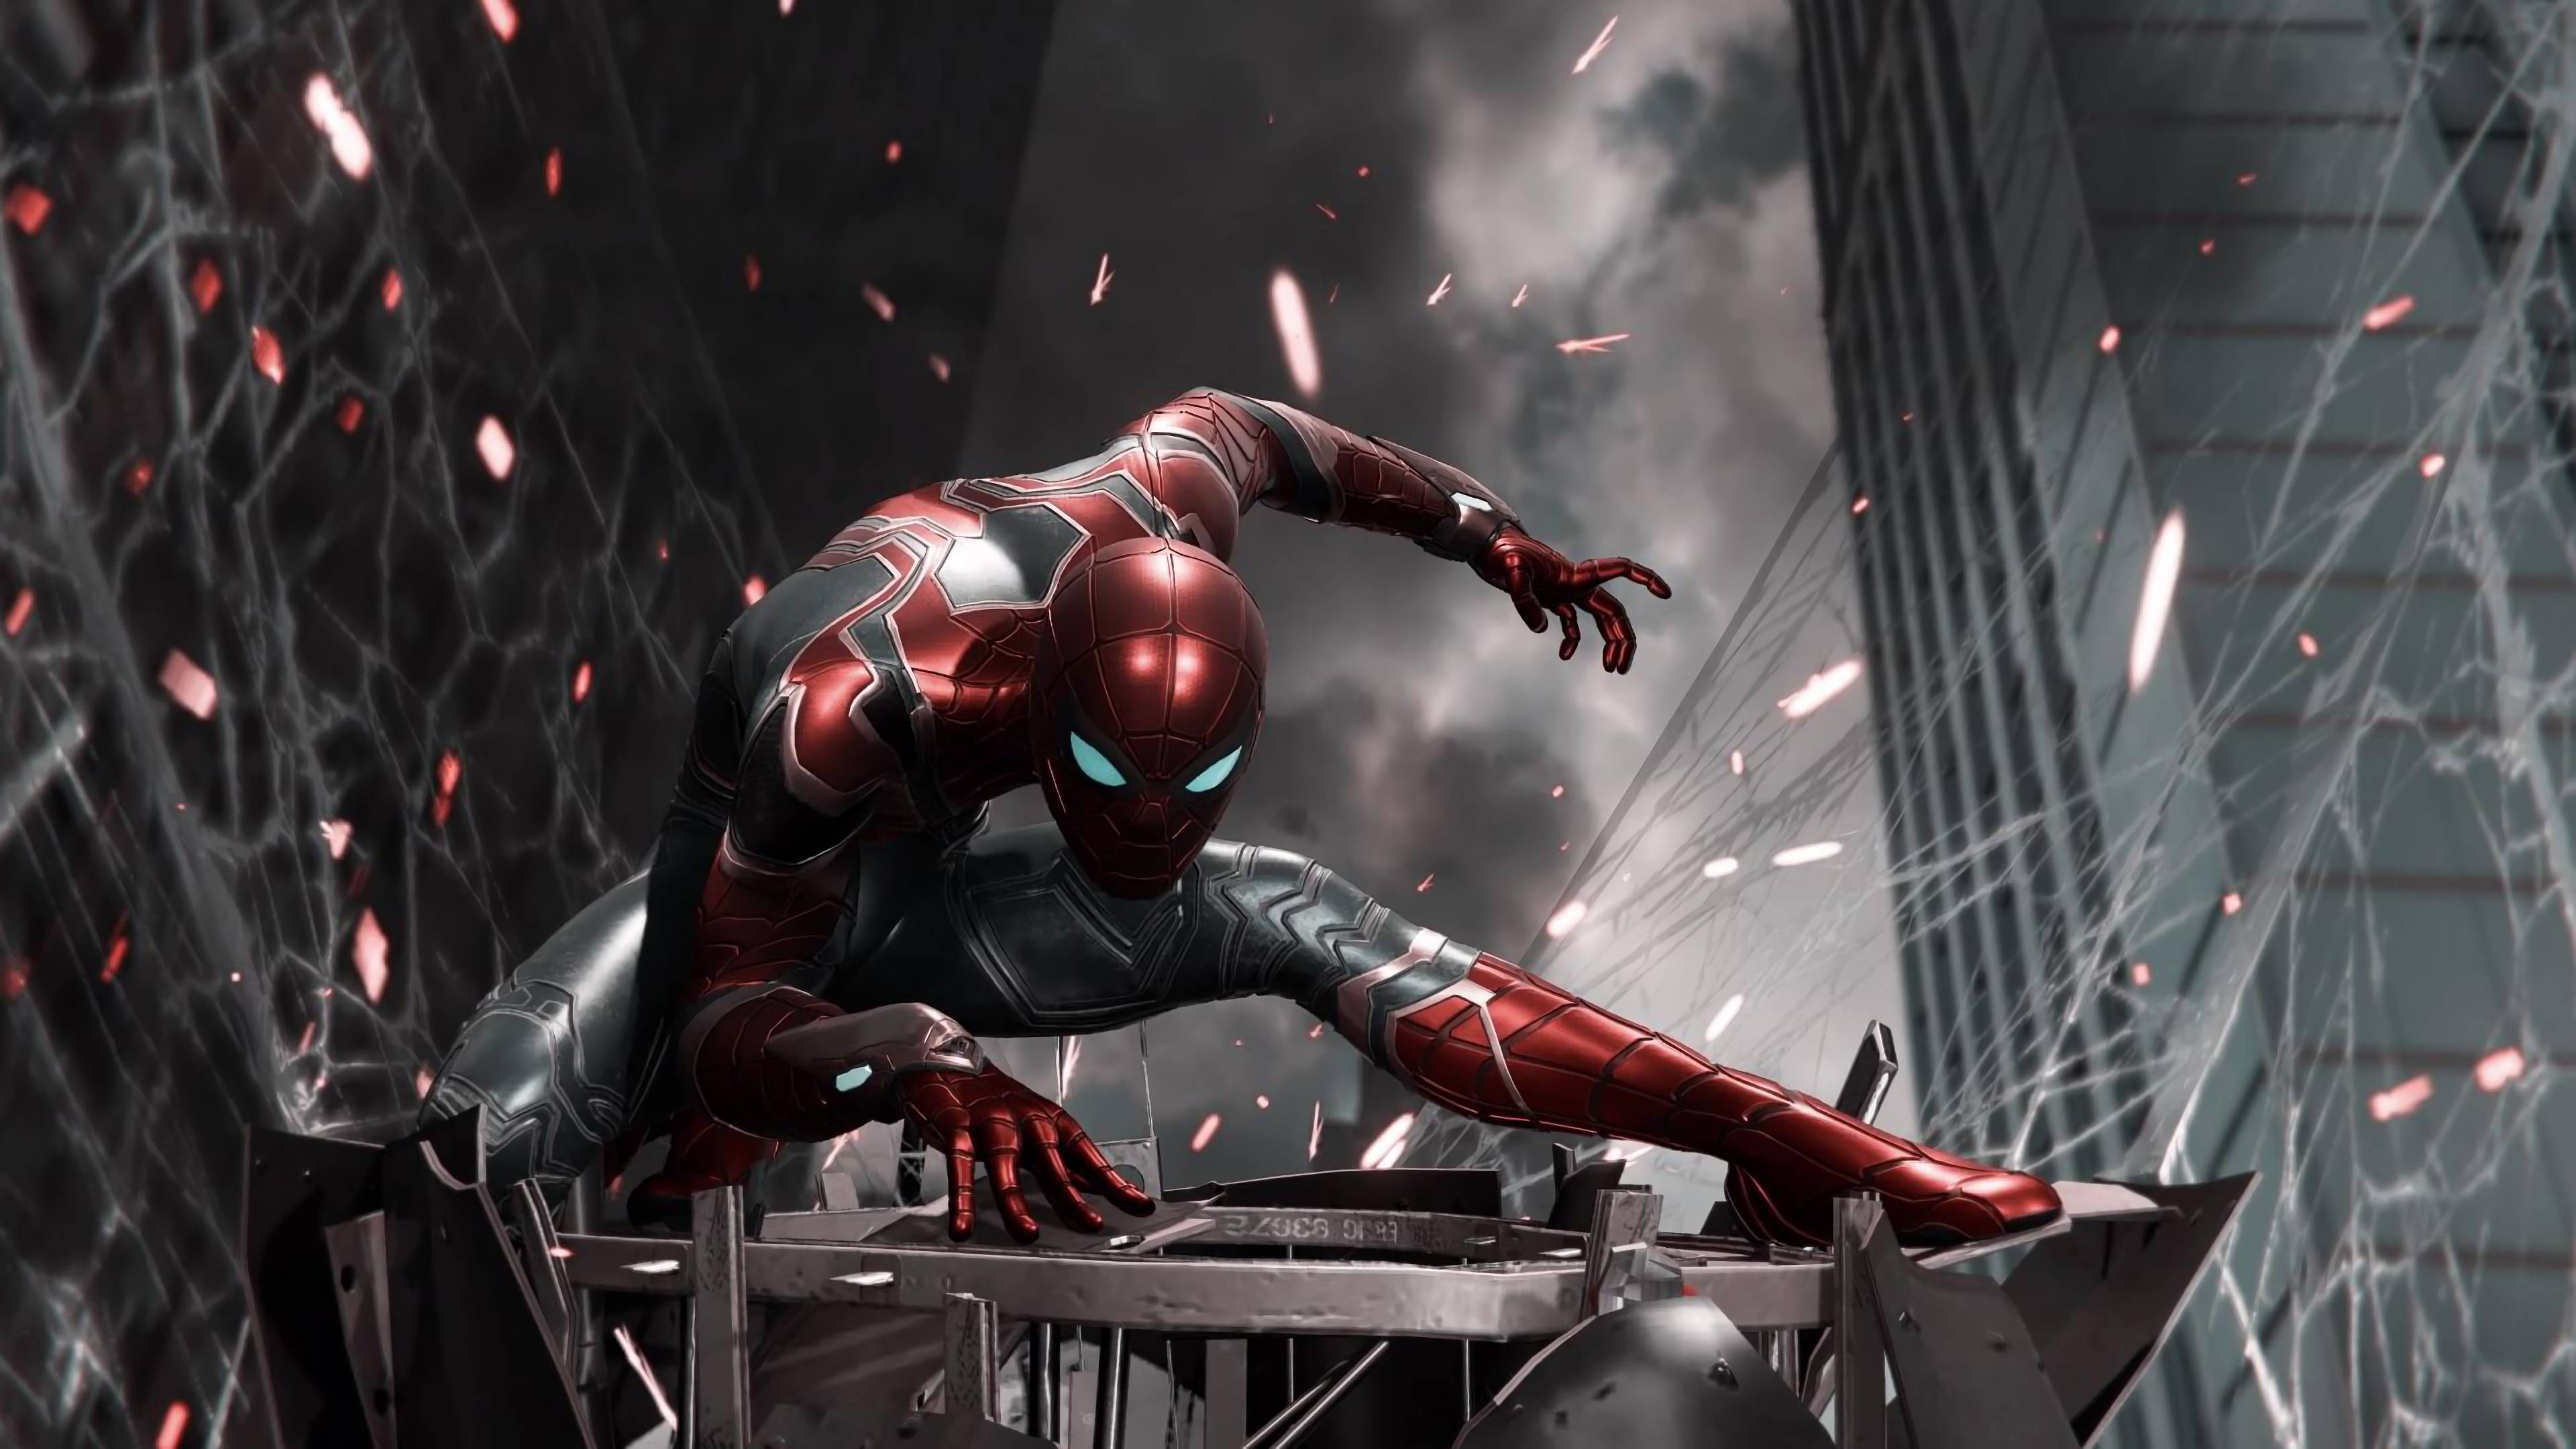 SpiderMan Iron Spider Armor Avengers Endgame 4K Wallpaper 32341